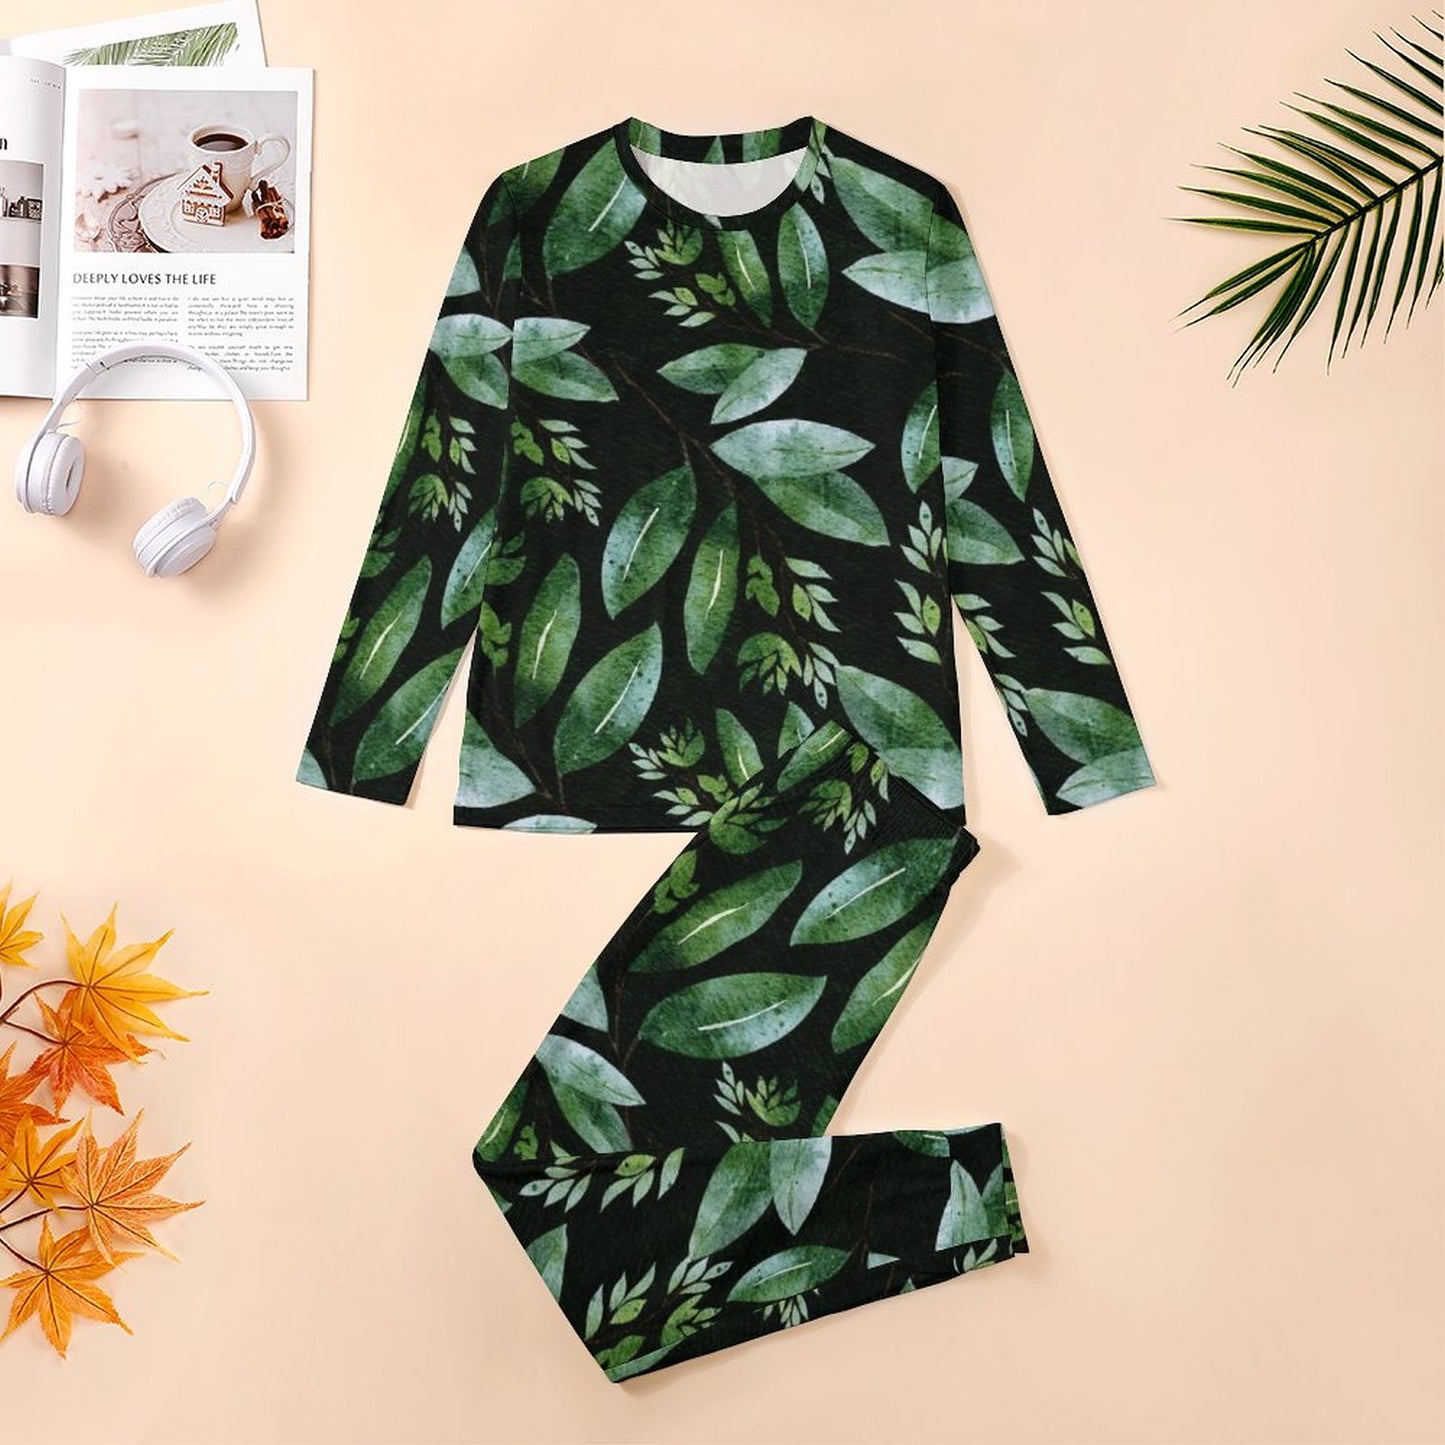 Online DIY Men's Pajama Suit Plant Pattern